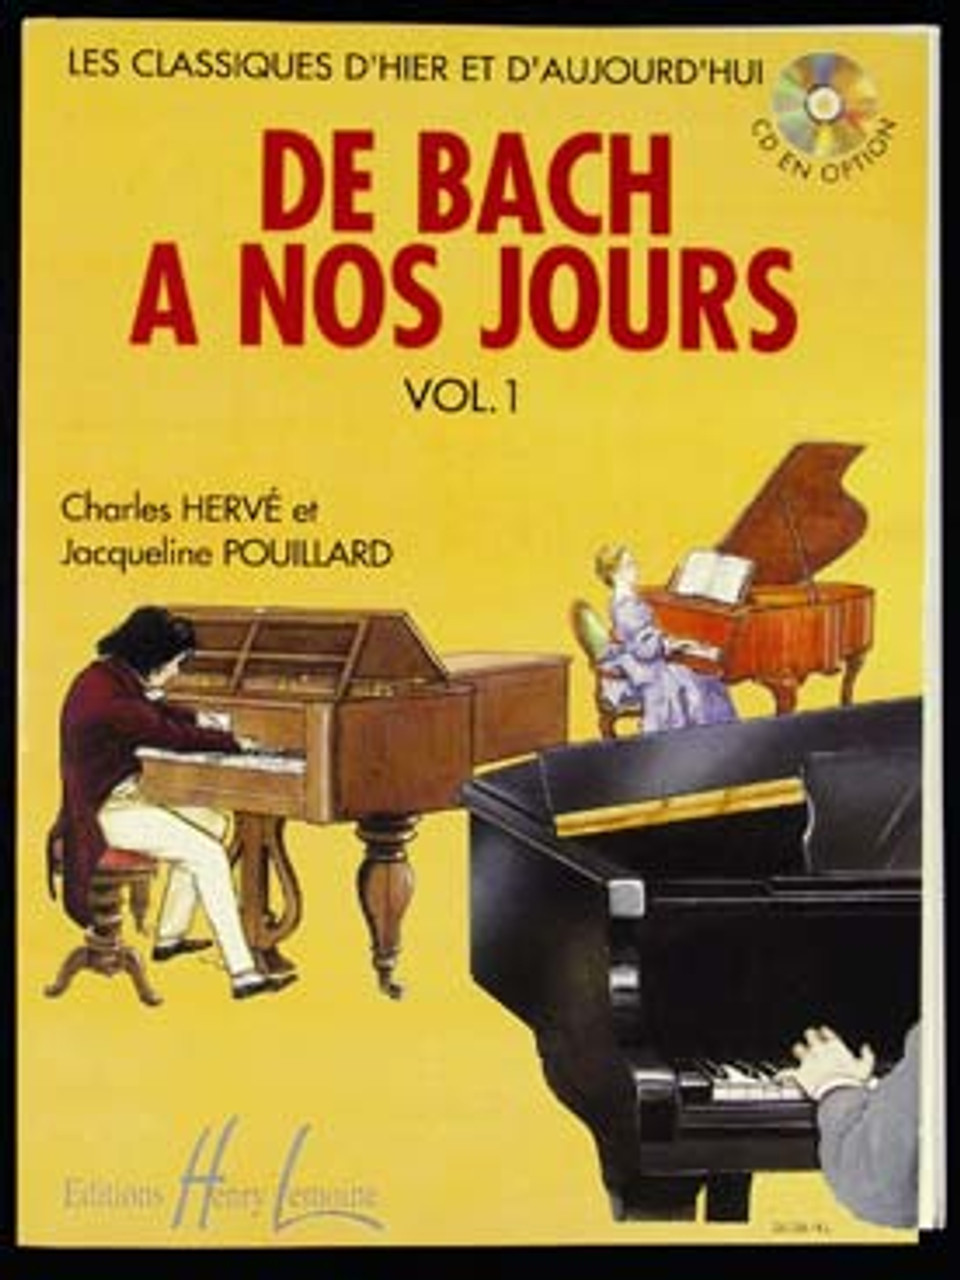 POUILLARD De Bach à nos Jours Vol 1A